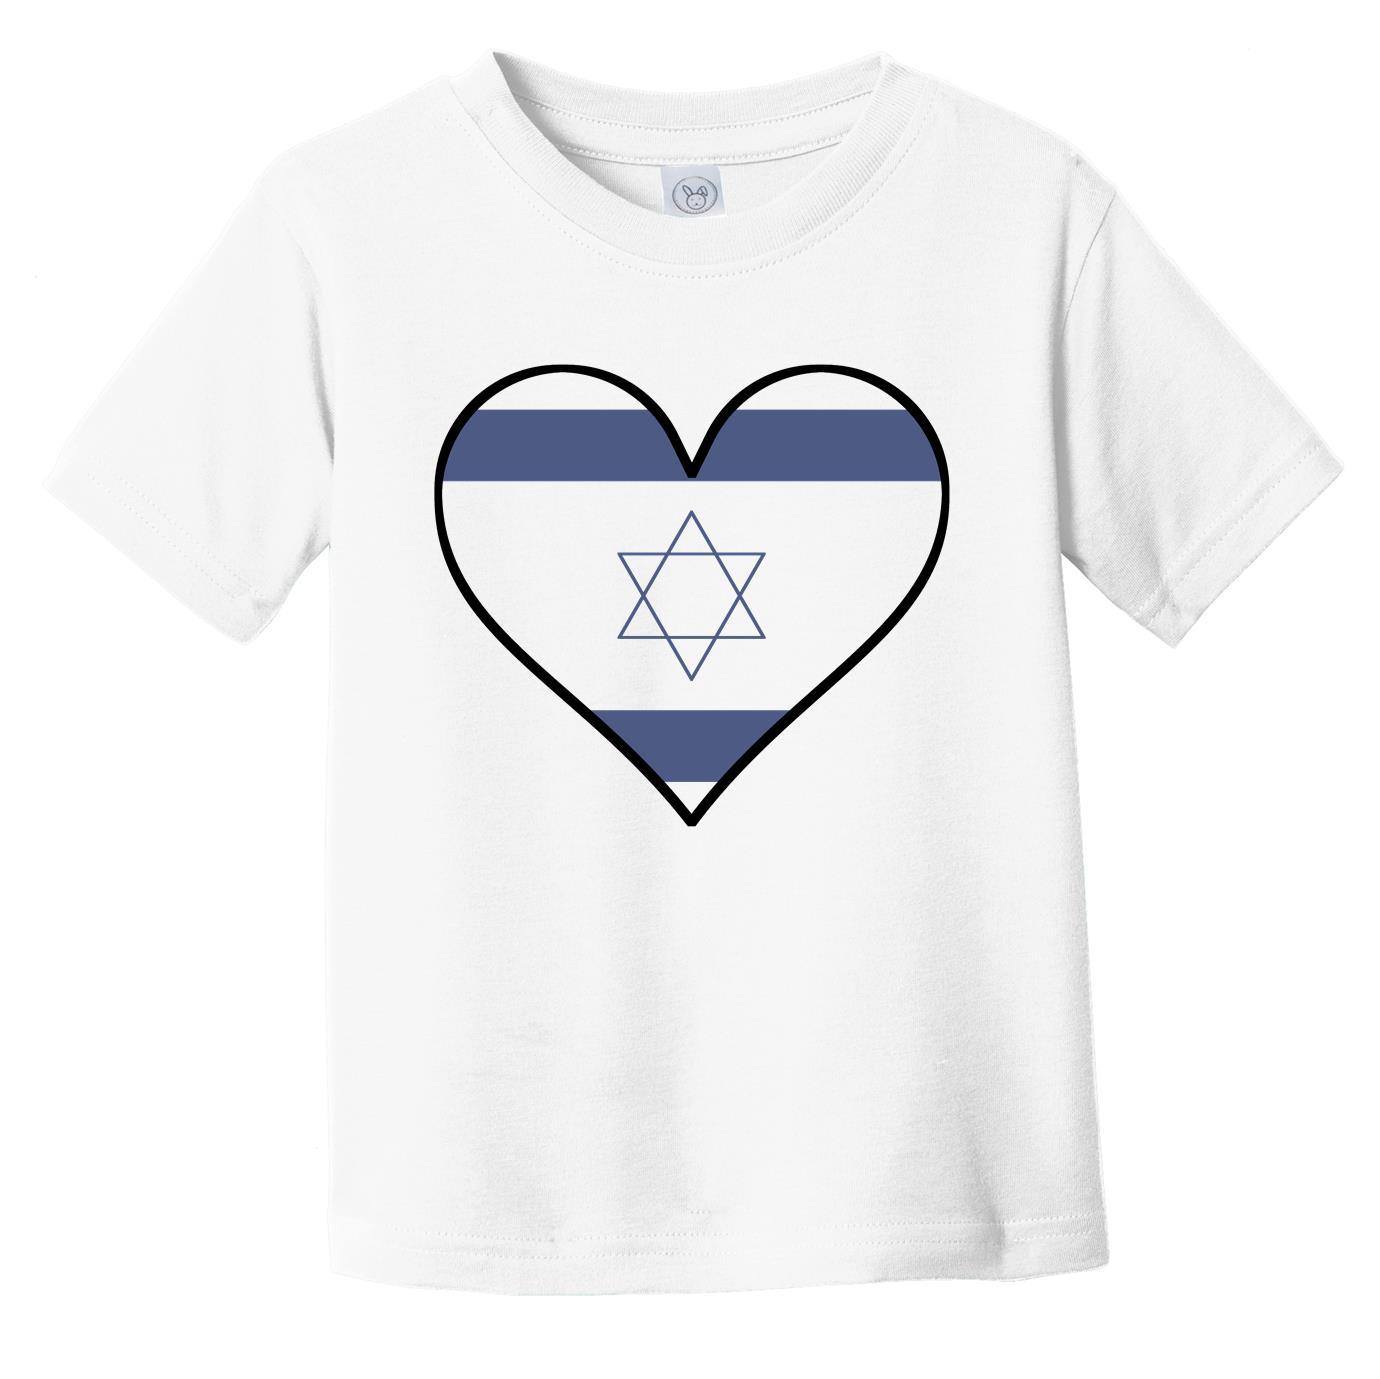 Israeli Flag T-Shirt - Cute Israeli Flag Heart - Israel Infant Toddler Shirt